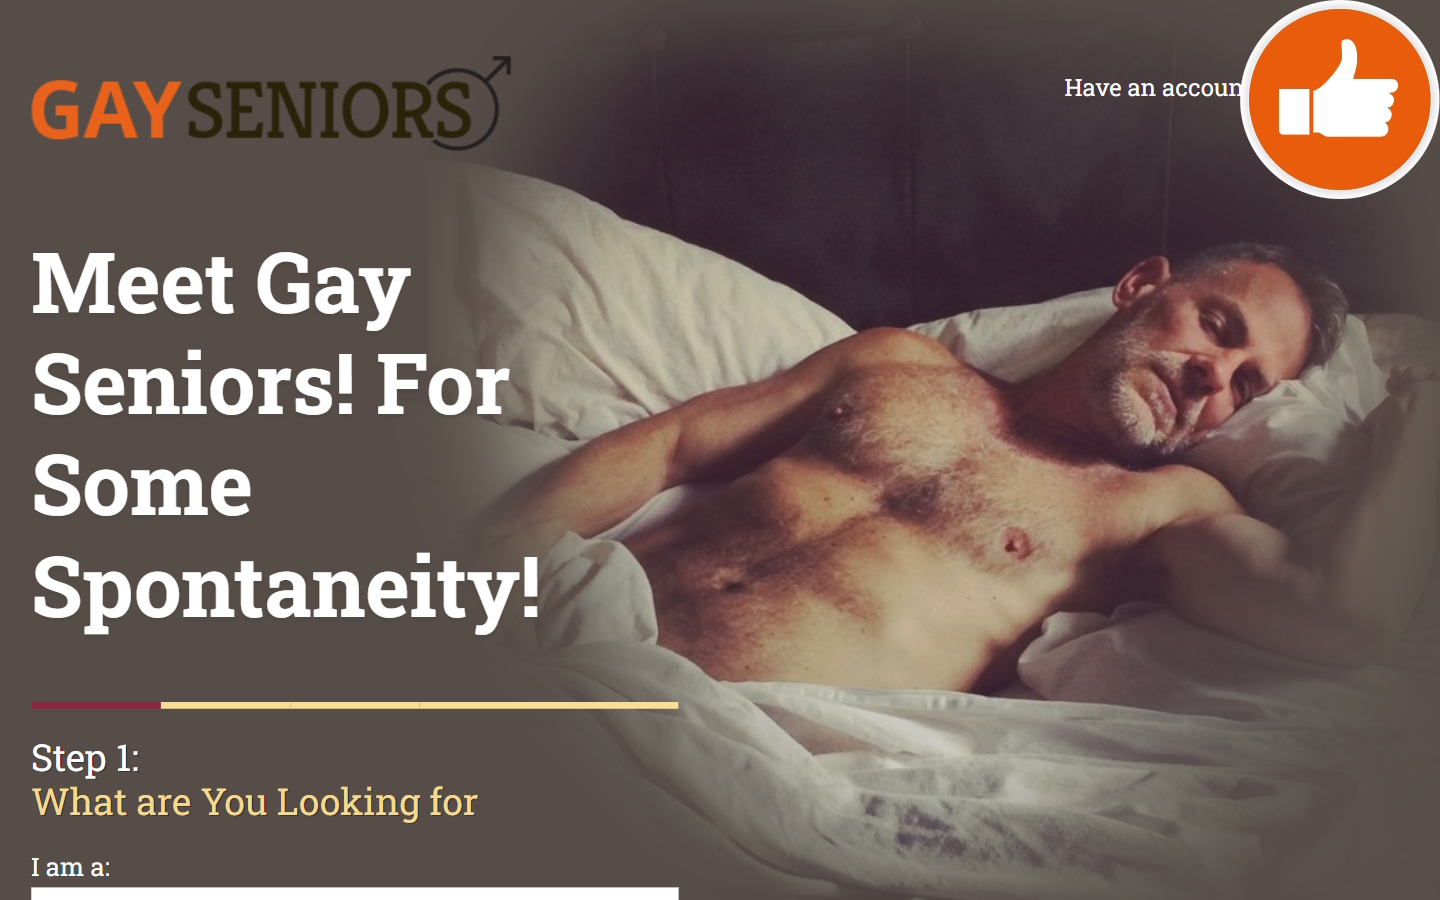 Review GaySeniors.com.au Scam